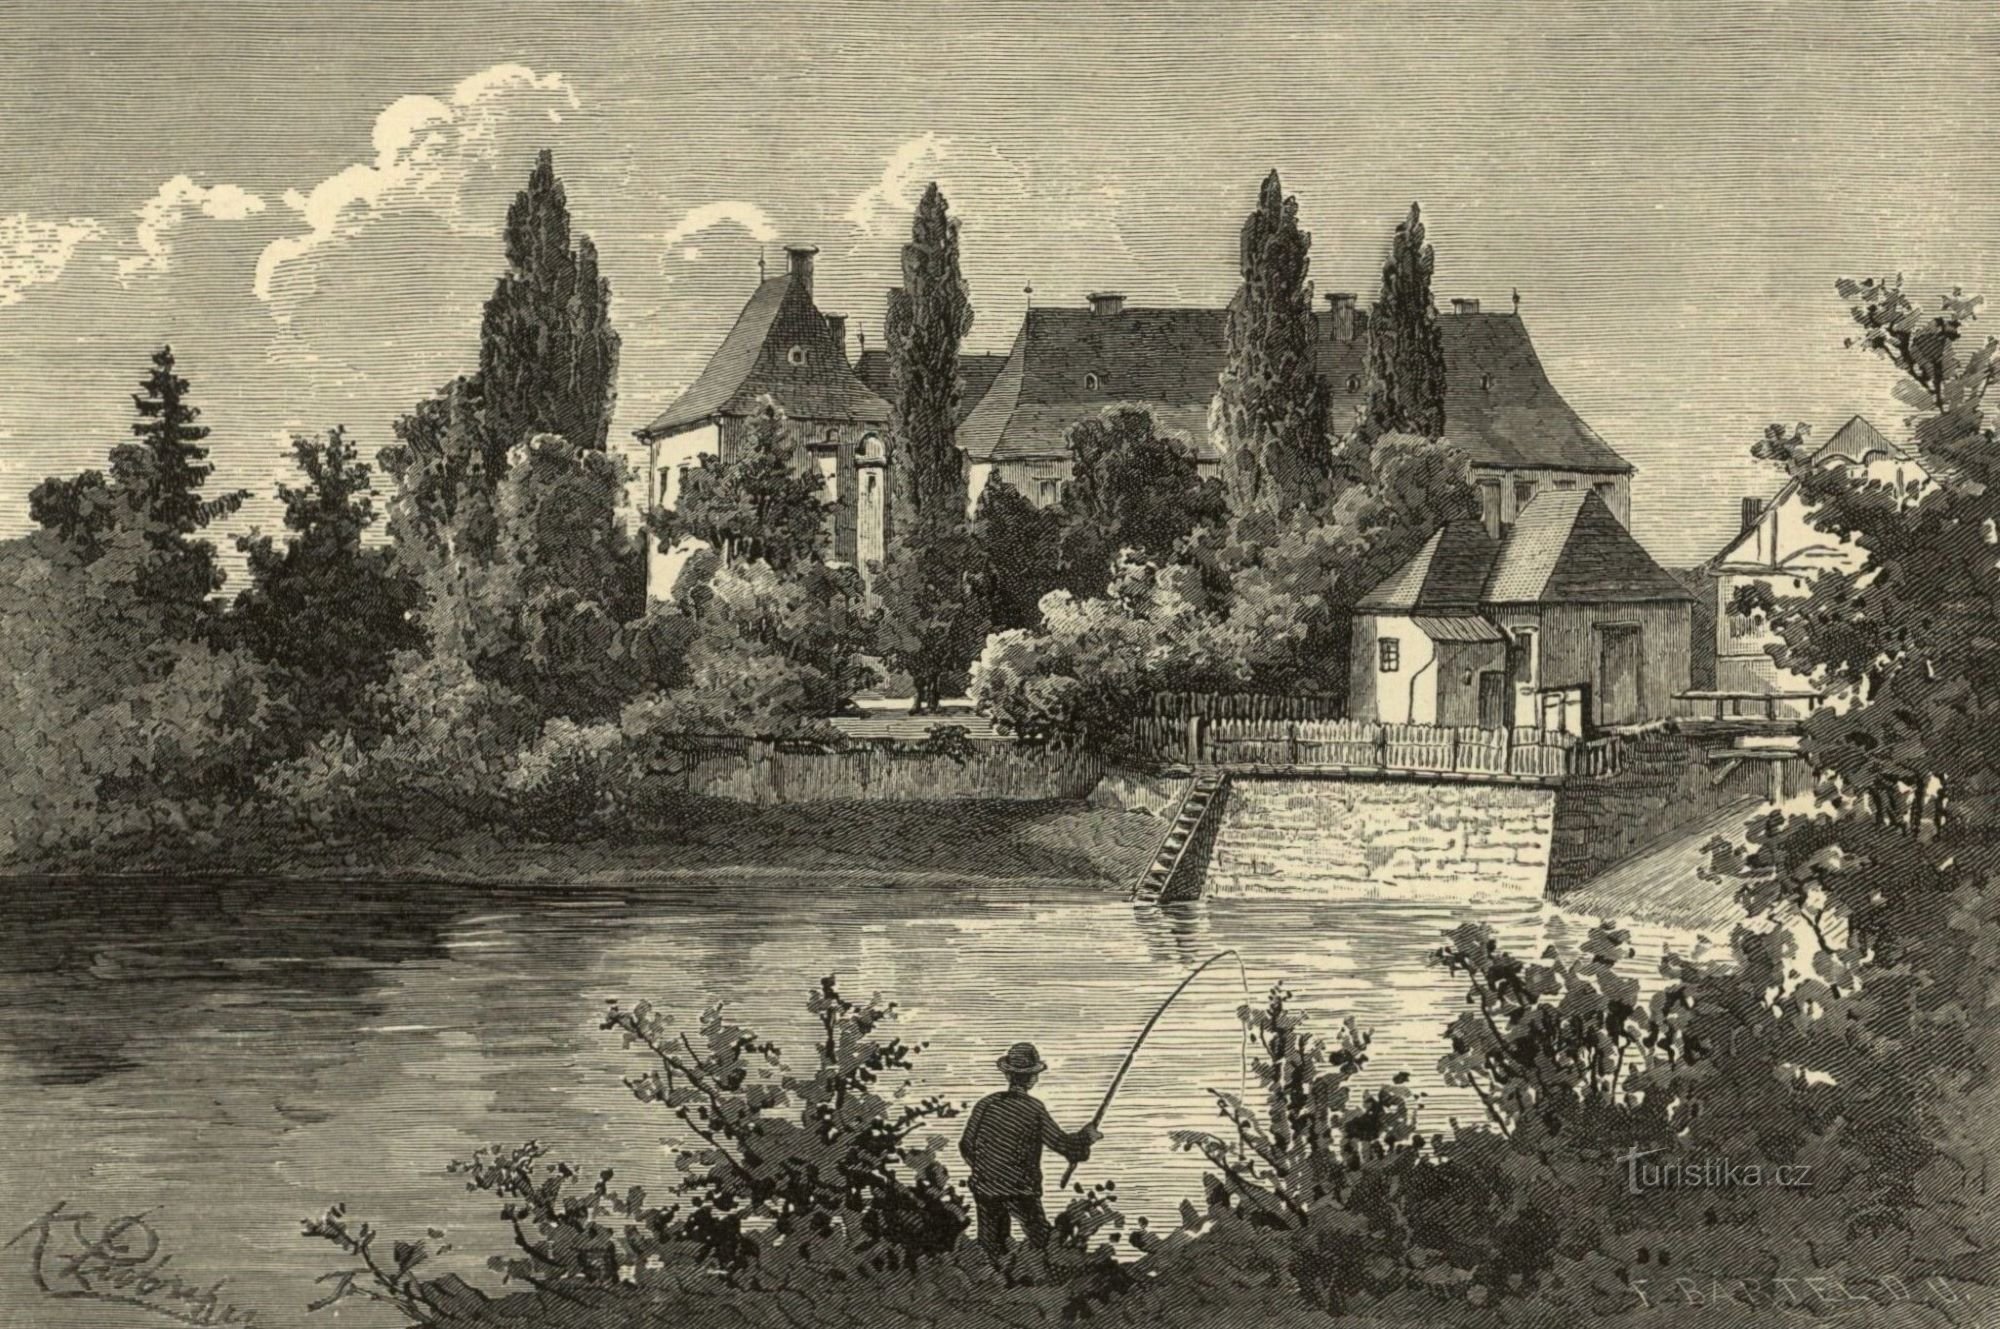 Slottet i Smiřice under andra hälften av 2-talet